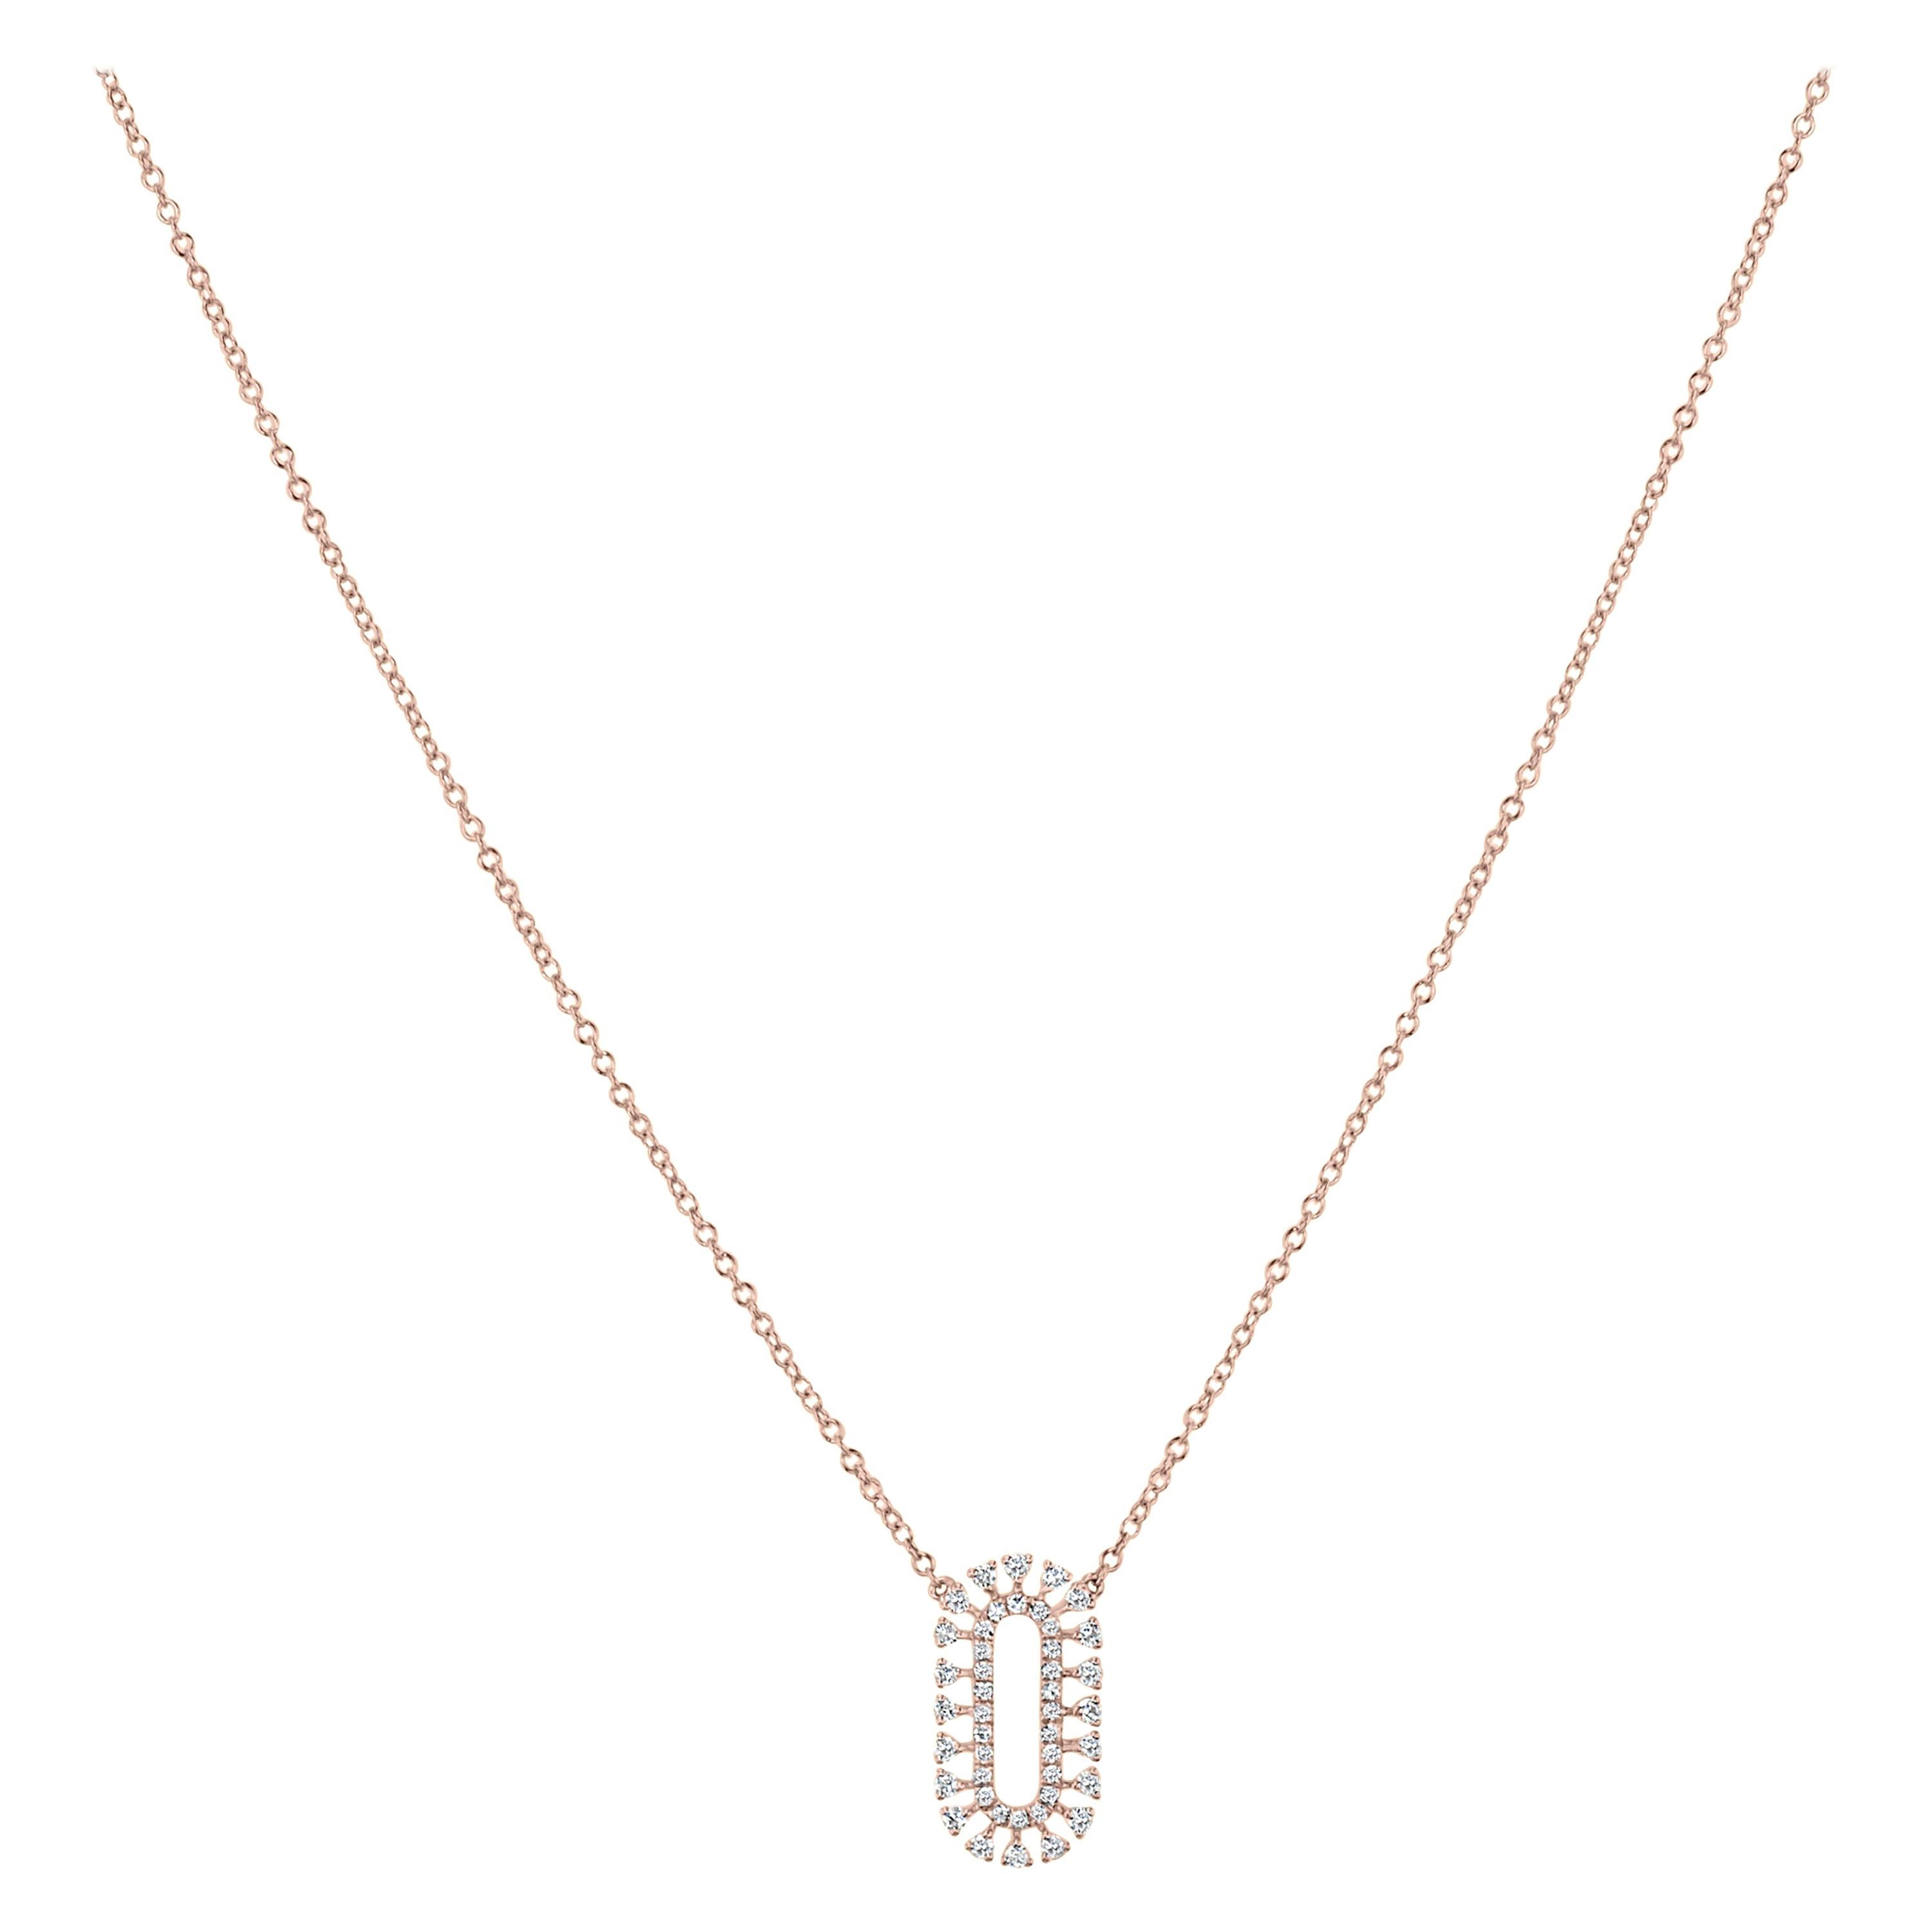 Luxle 0.24 Carat Diamond Pendant Necklace in 18k Rose Gold